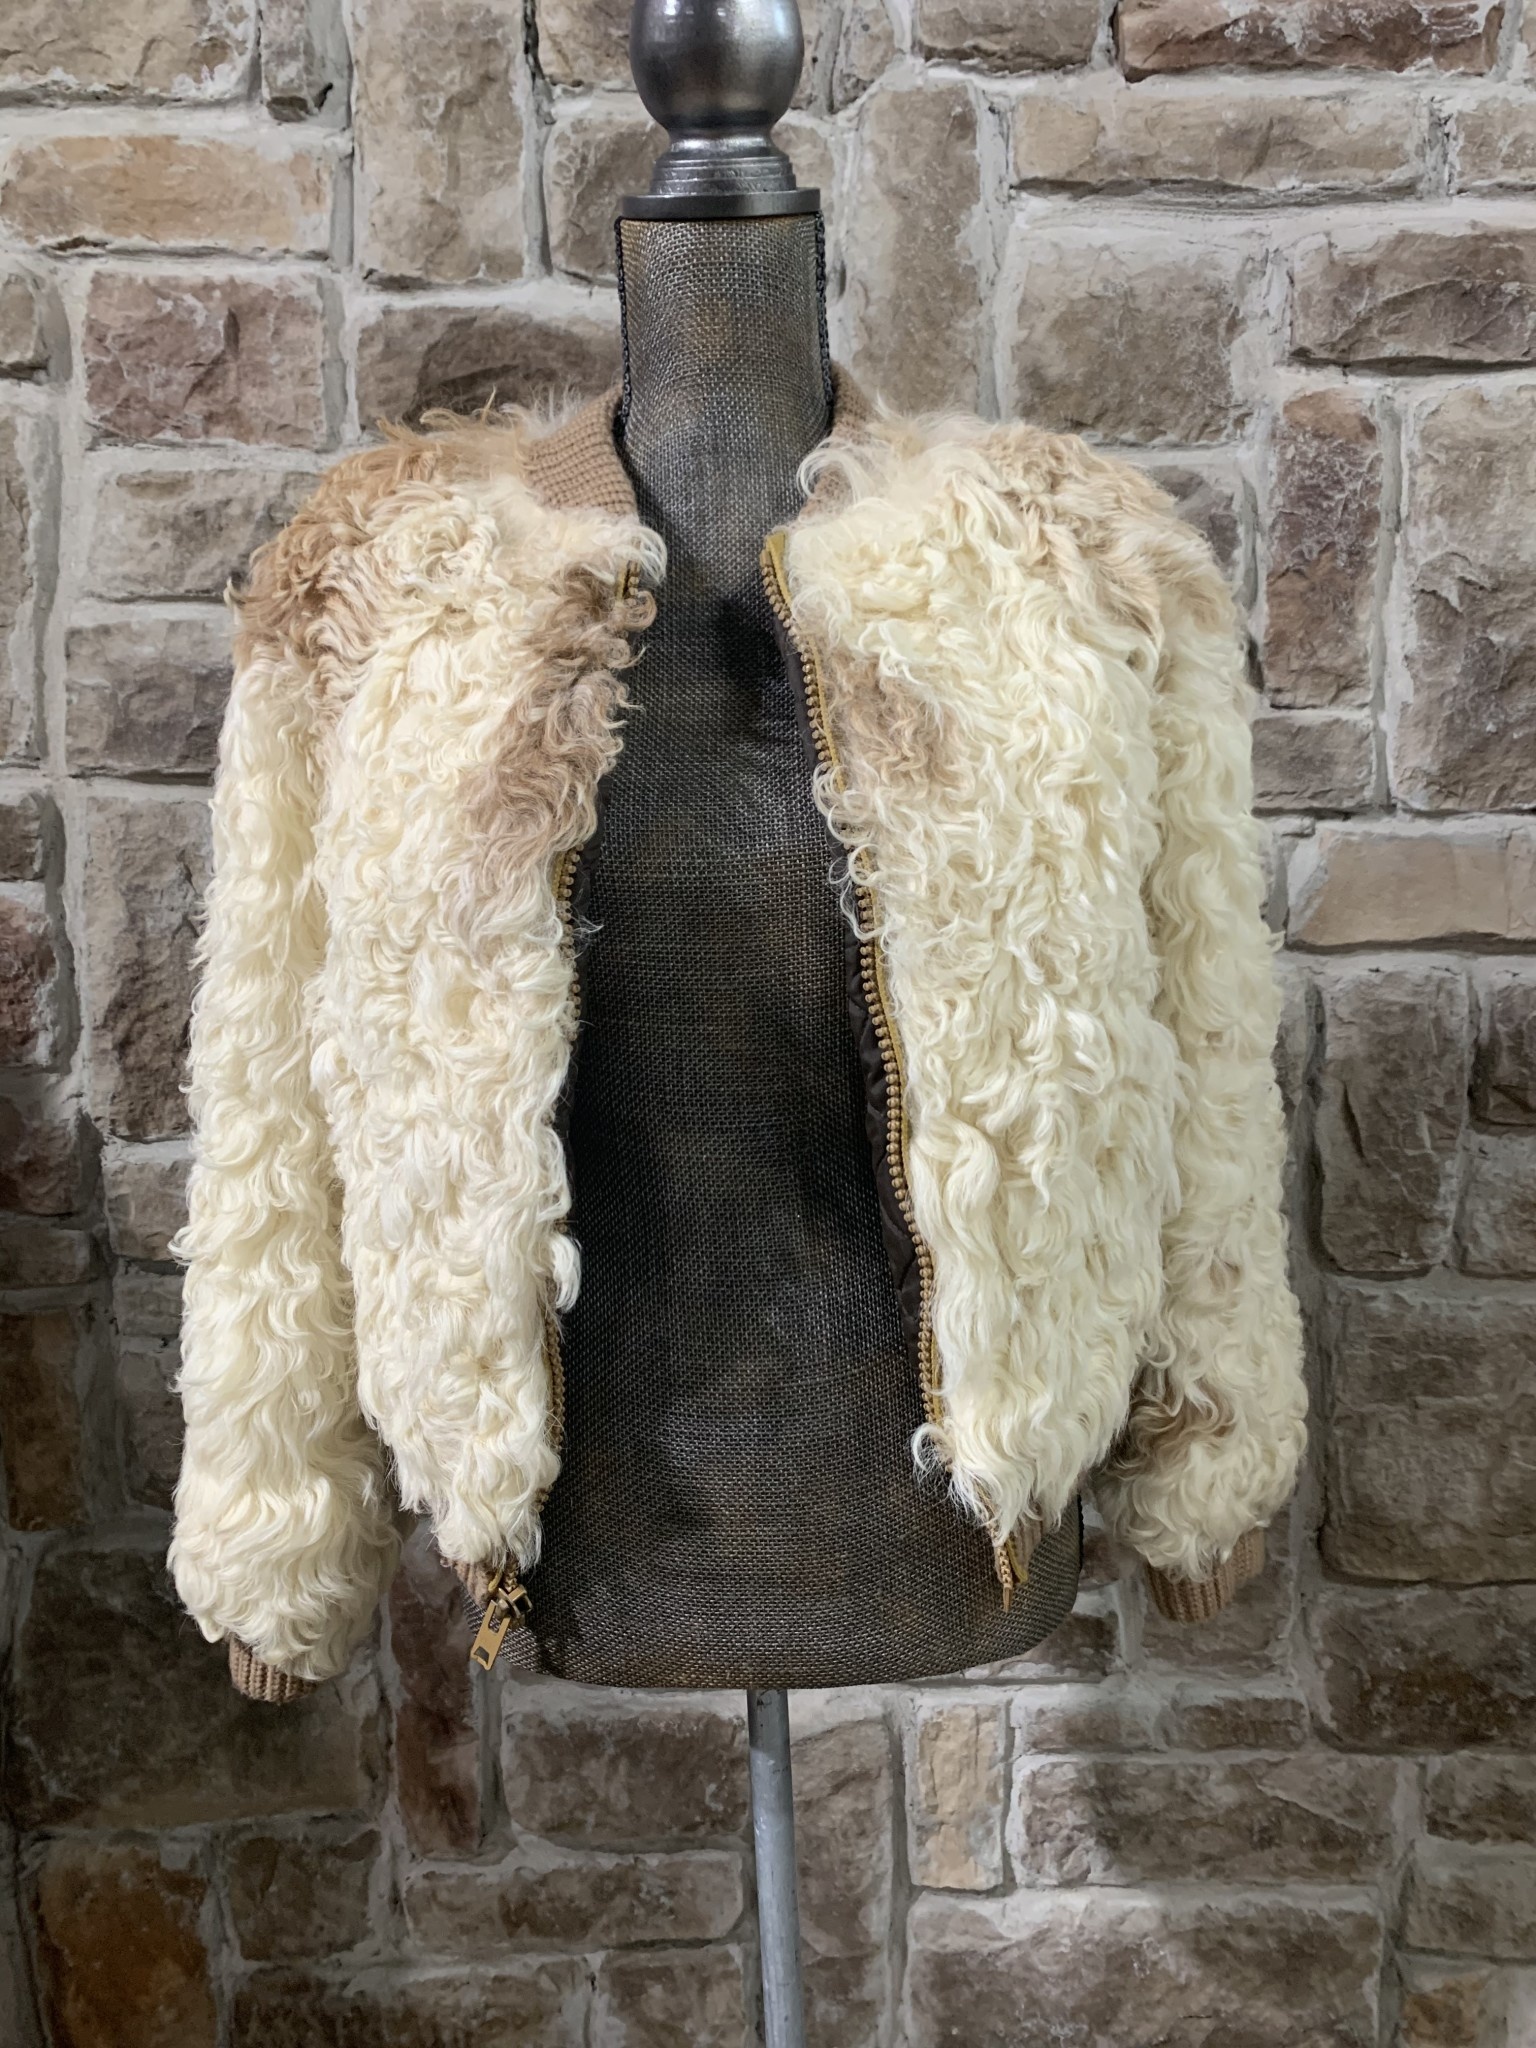 Koslow's Furs